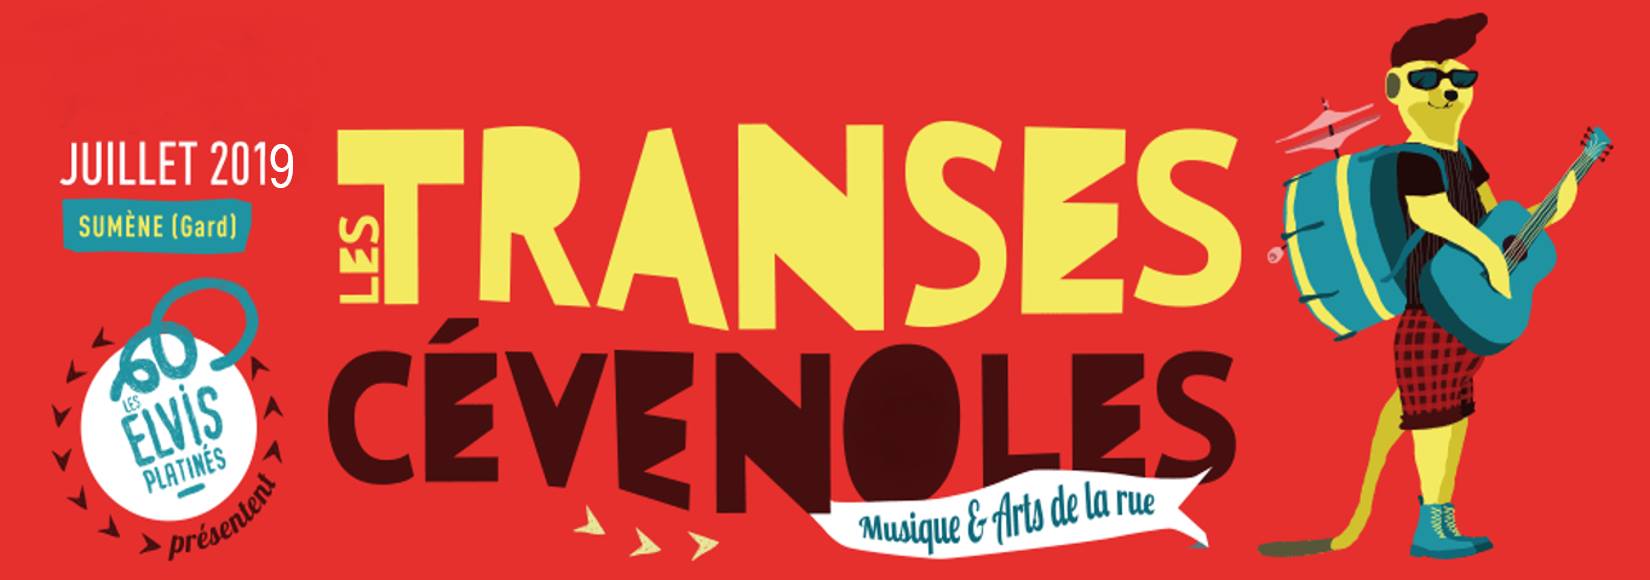 Transes-Cevenoles-2019